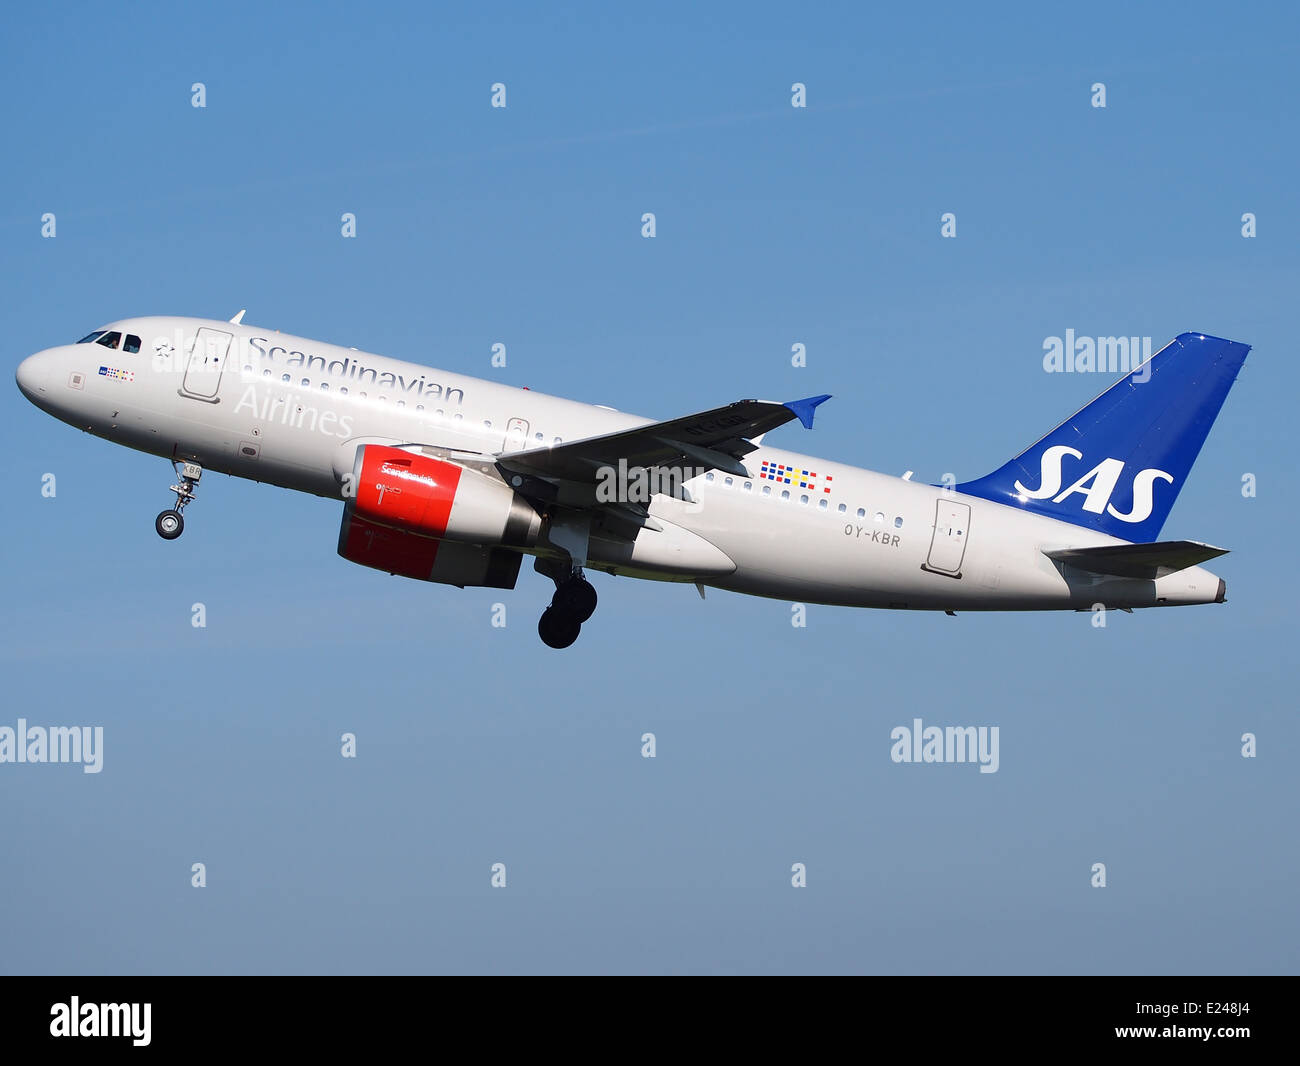 OY-KBR SAS Scandinavian Airlines Airbus A319-131 le décollage de l'aéroport de Schiphol (AMS - EHAM), aux Pays-Bas, 16mai2014, pic-2 Banque D'Images